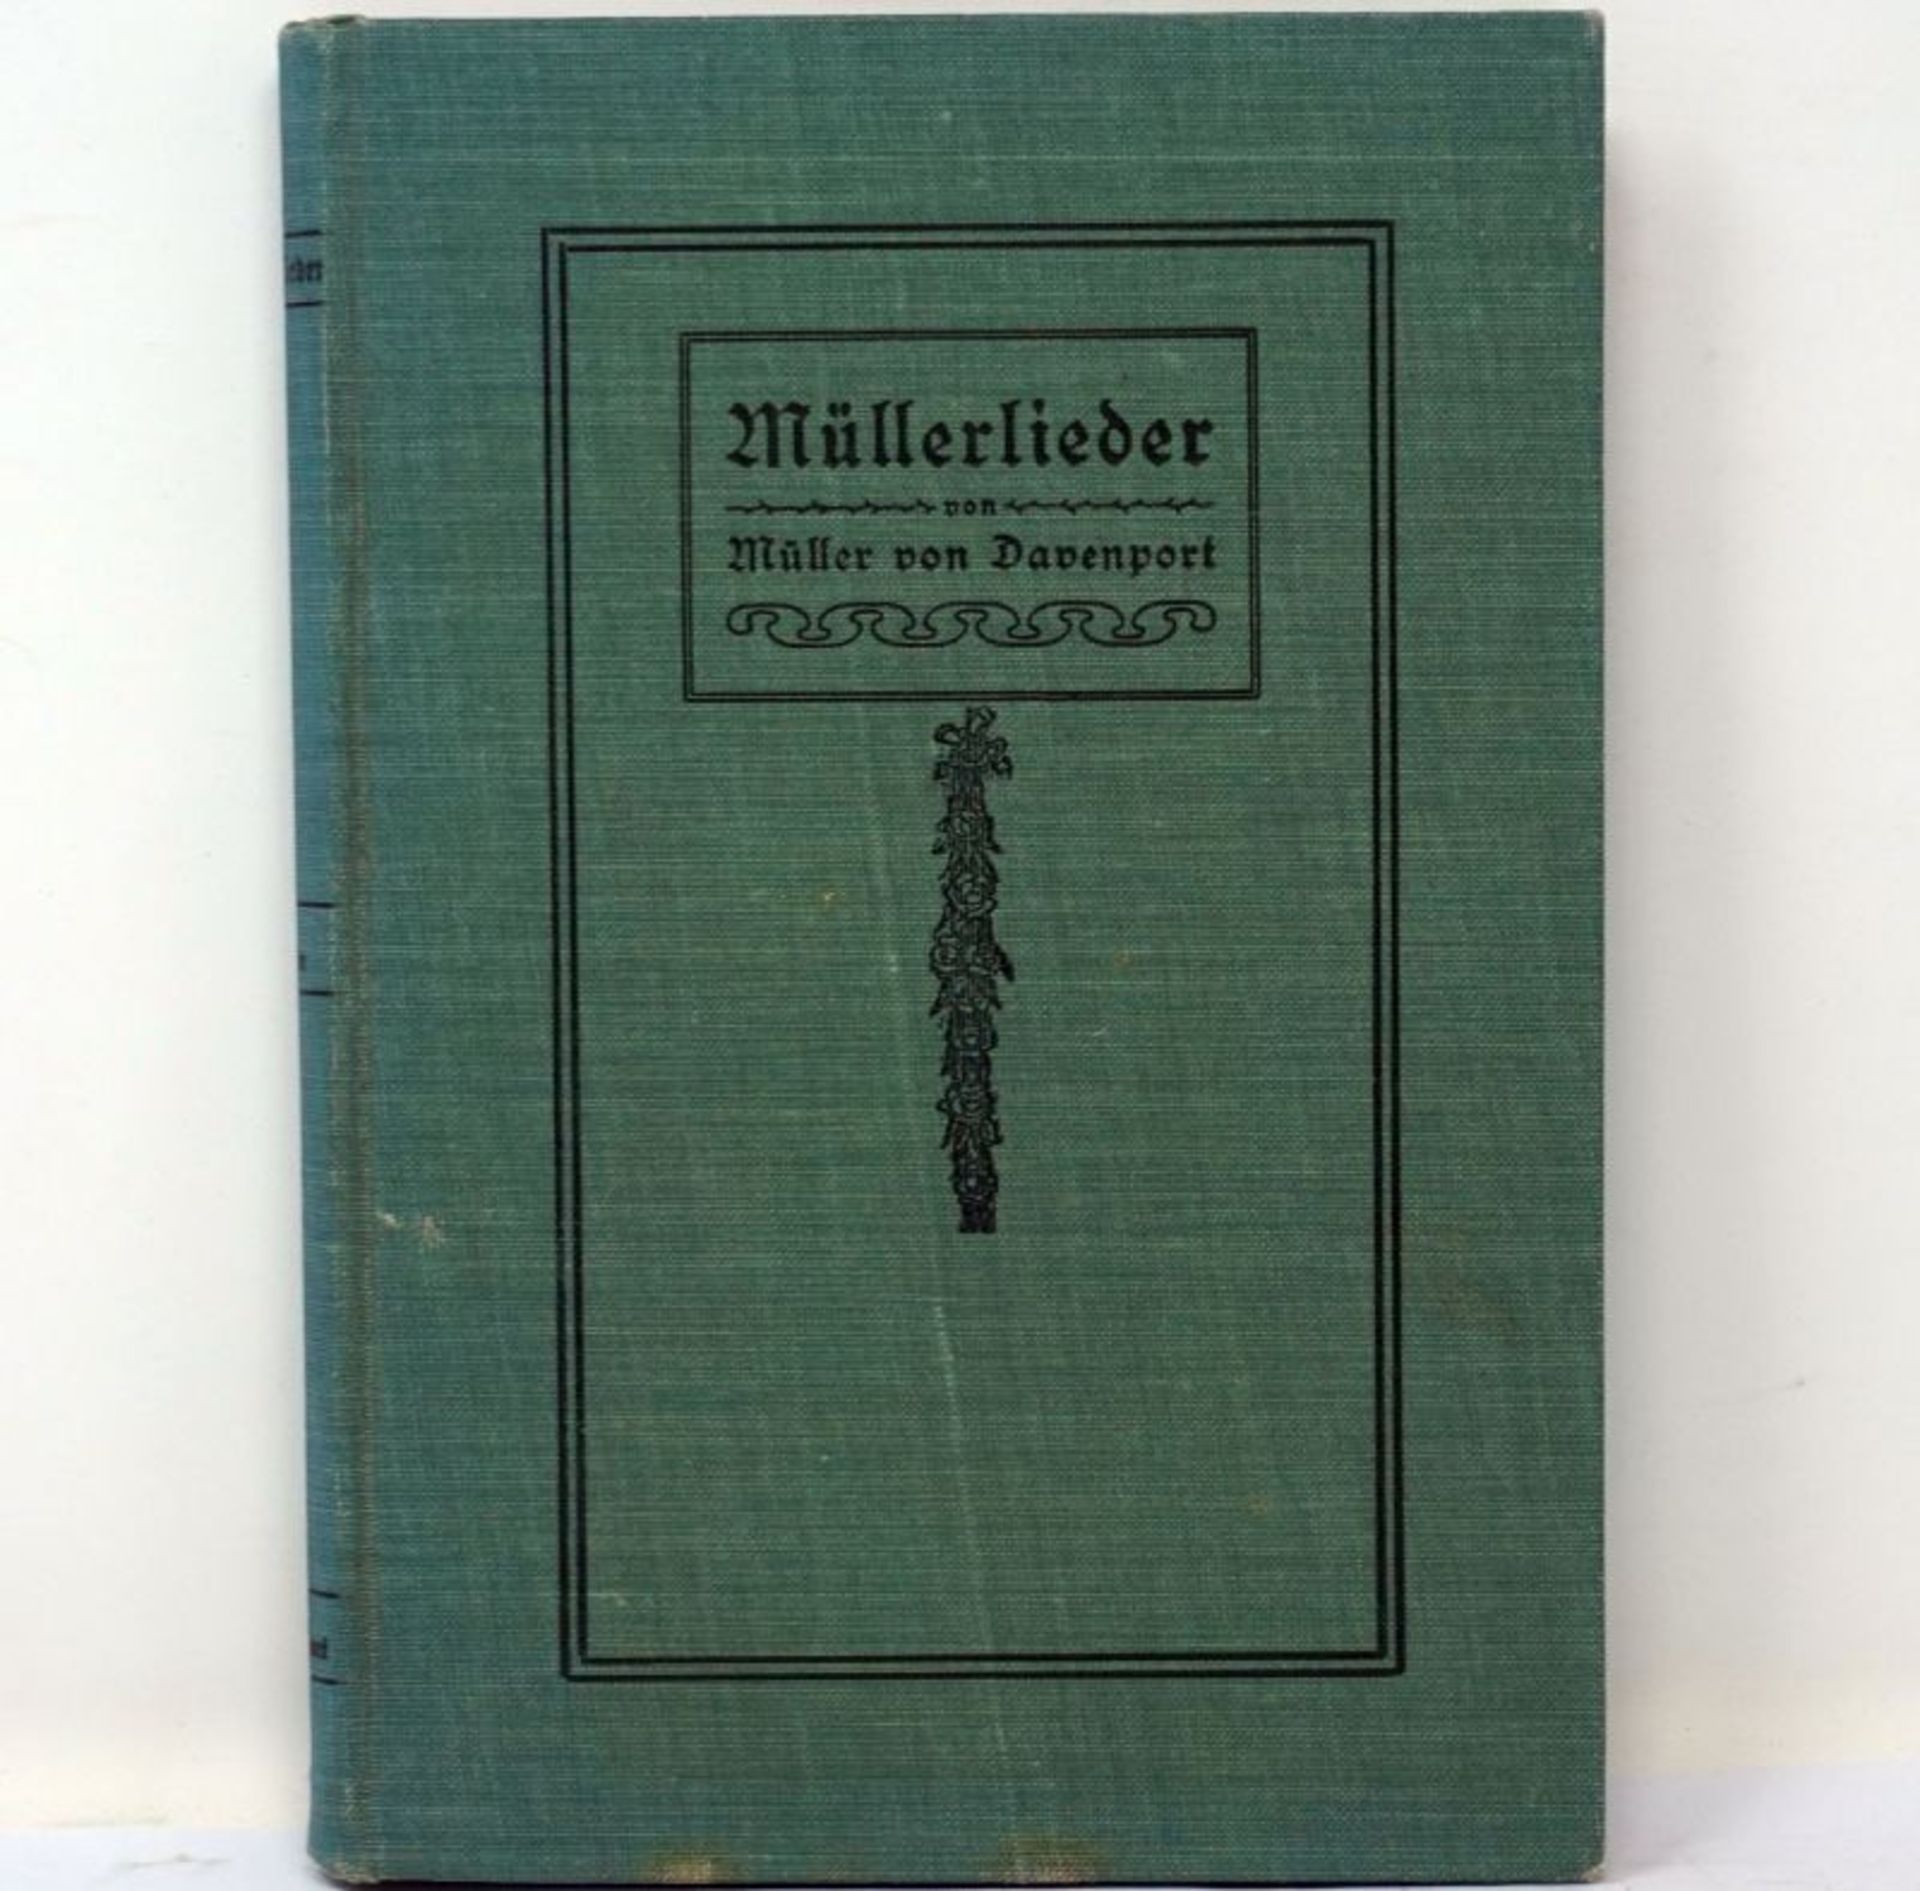 Müller, A. O.: Müllerlieder